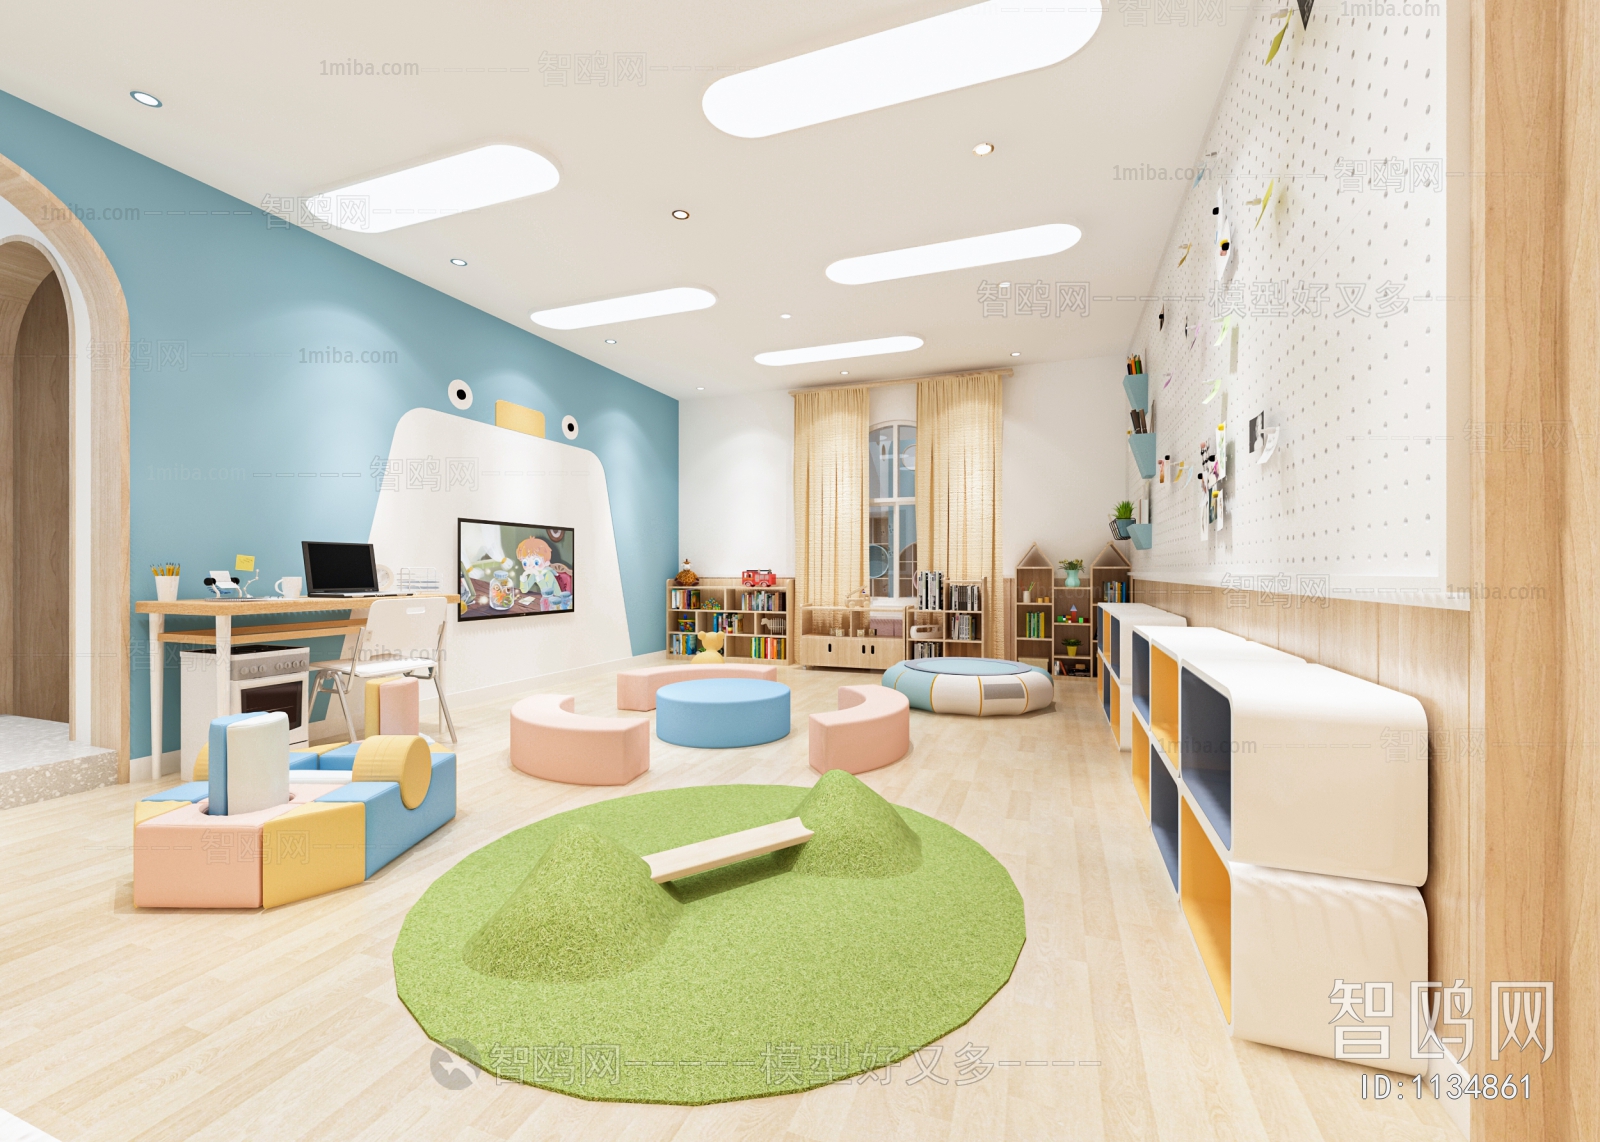 Modern Children's Kindergarten